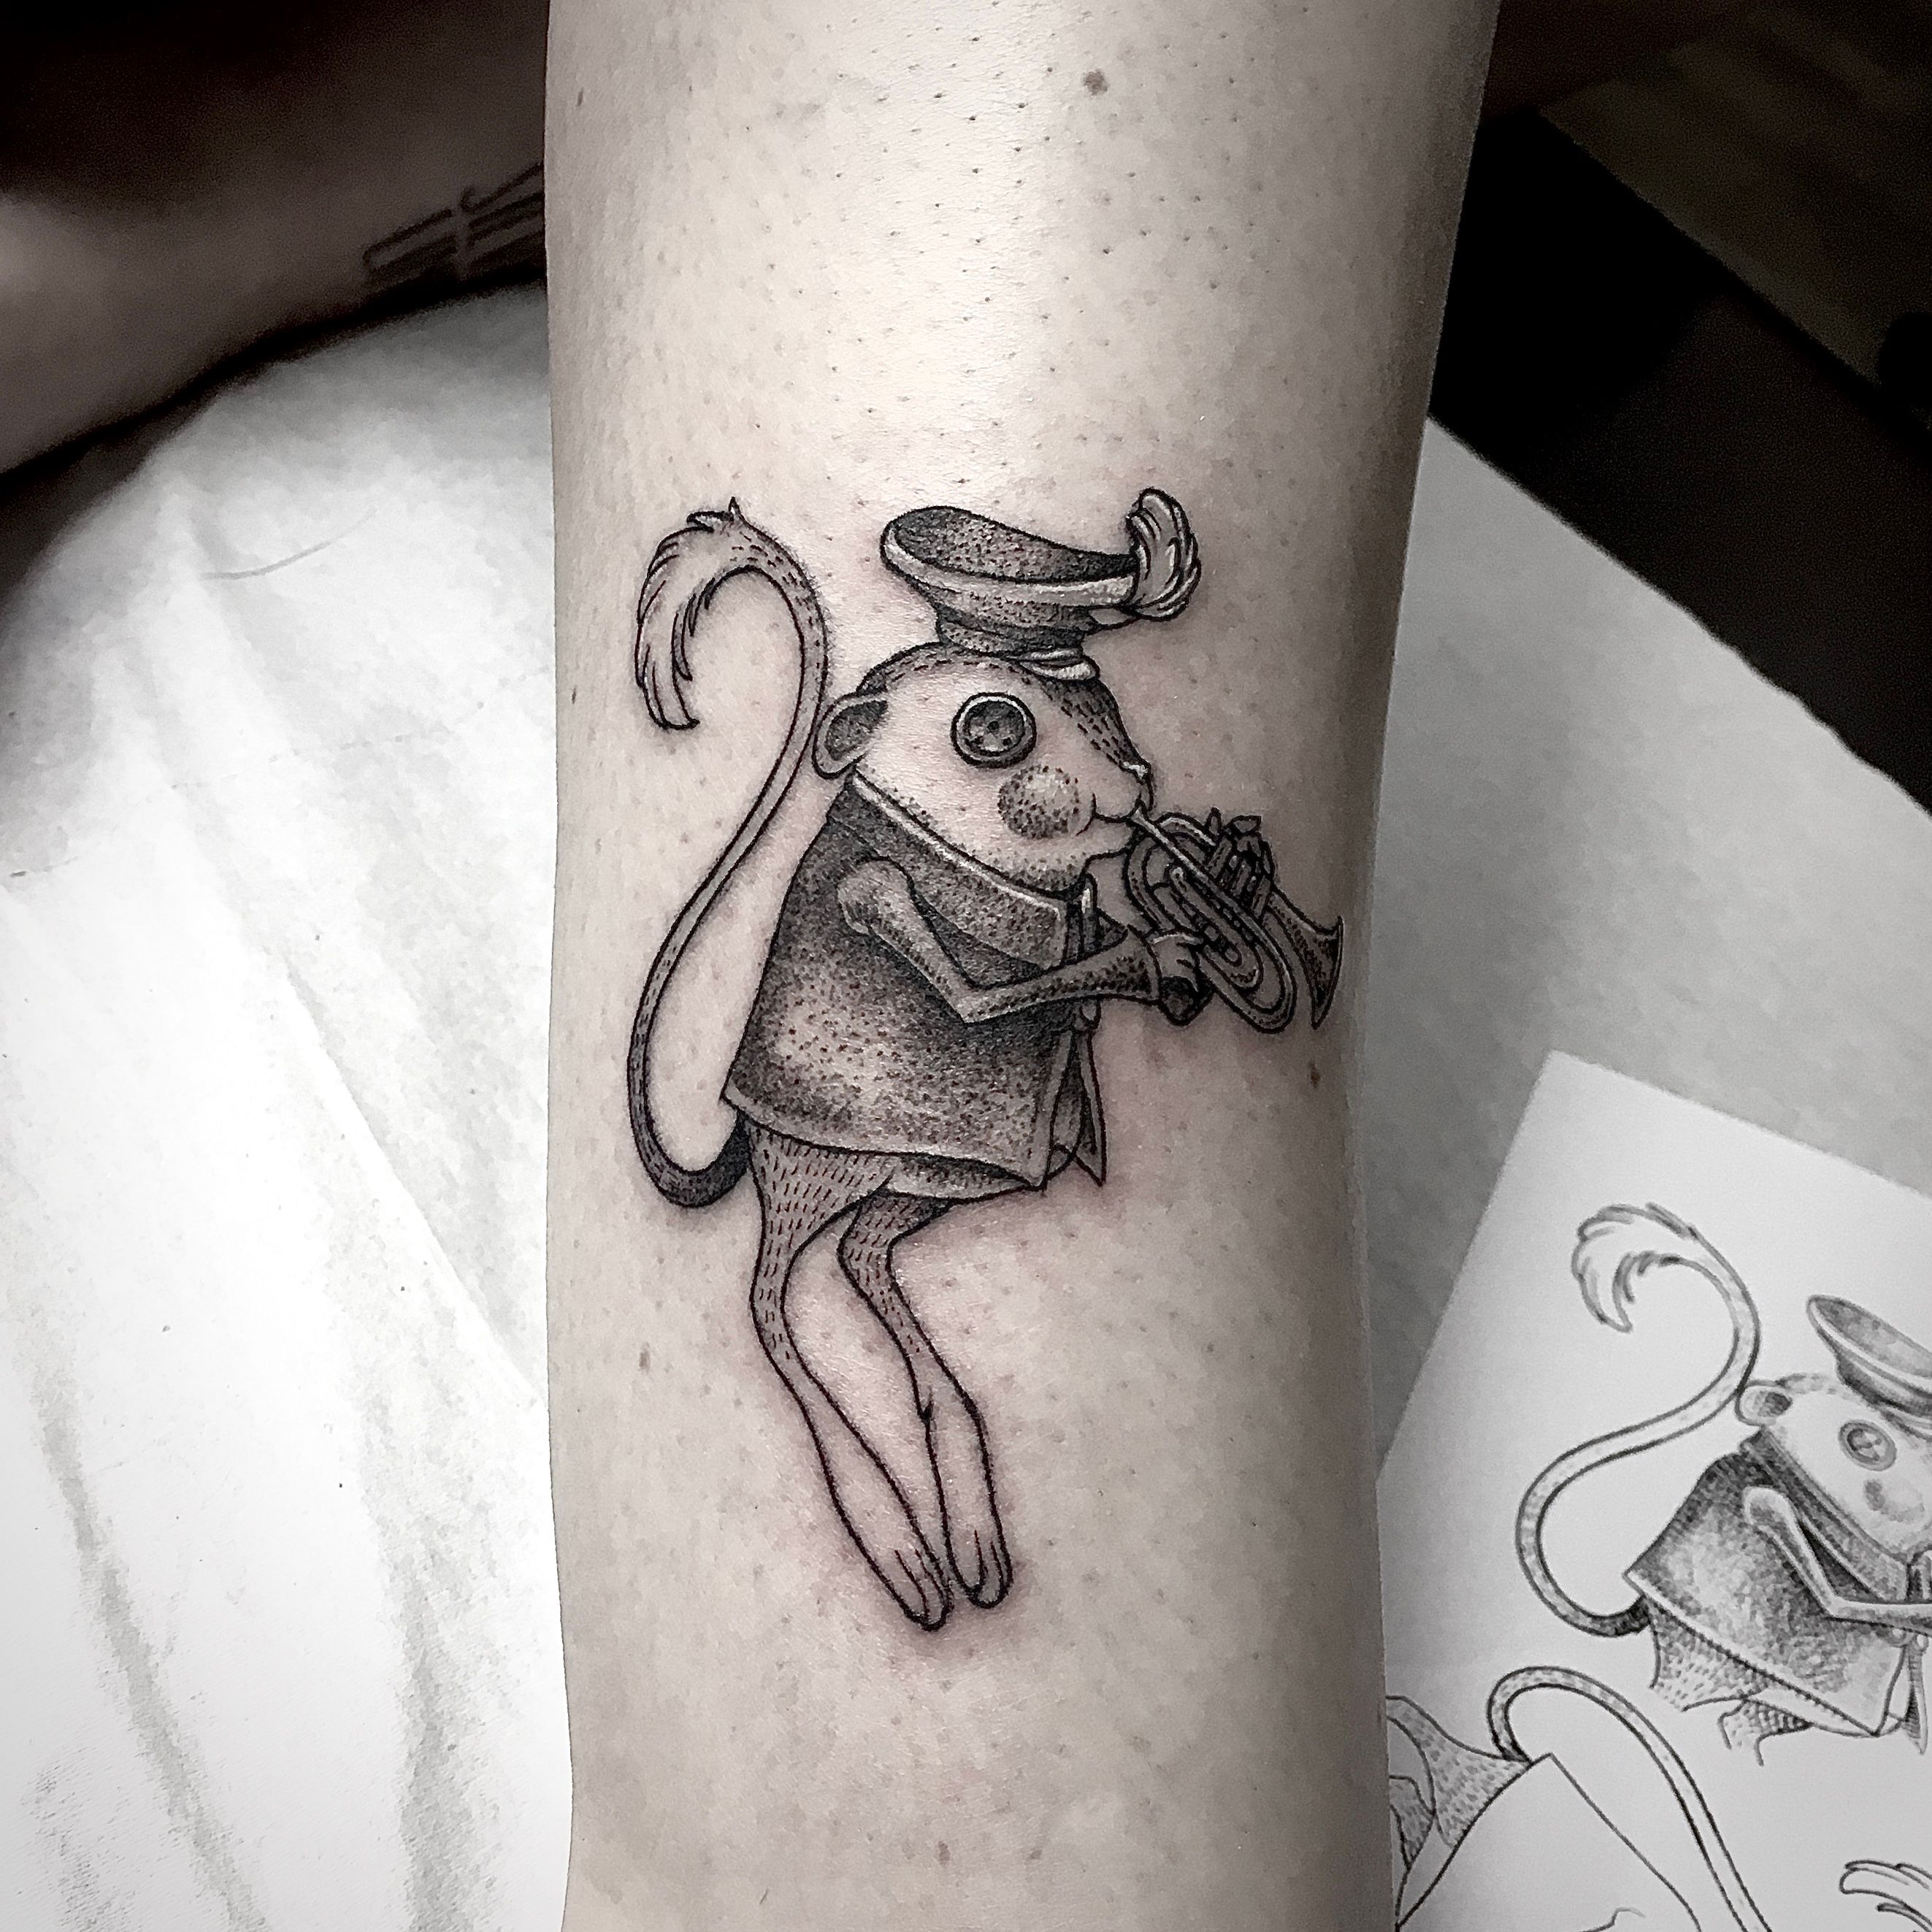 Rattle Tattoo on Twitter Work by Fang httpstcon3w8vwa3RQ  httpstcoY91rIP7djA httpstcoV5TbAE6mgL สก รานสก รอยสก  ลายสก tattoo bangkok tattoobangkok rattletattoo tattoostudio  tattooshop cat cattattoo coraline 